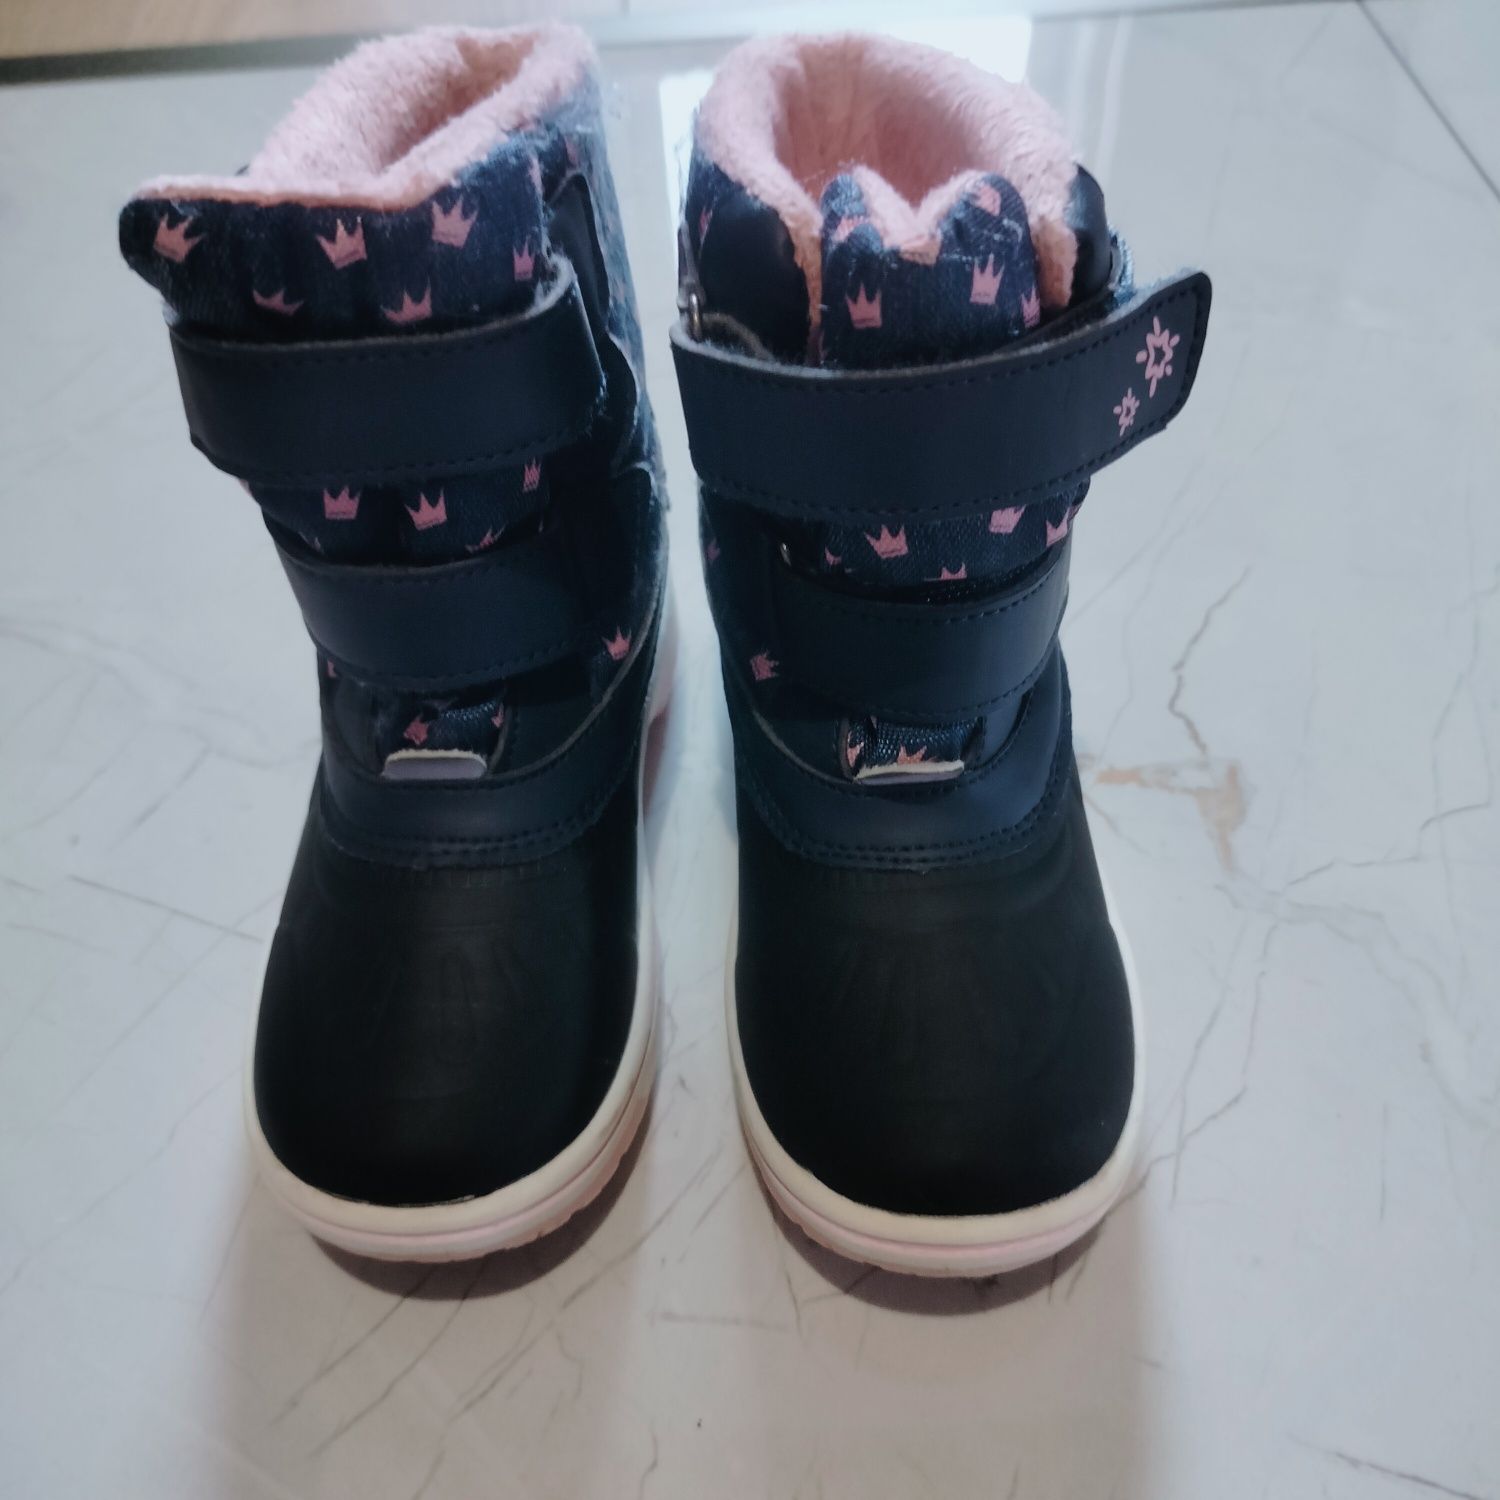 Buty zimowe śniegowce dla dziewczynki, rozm 26